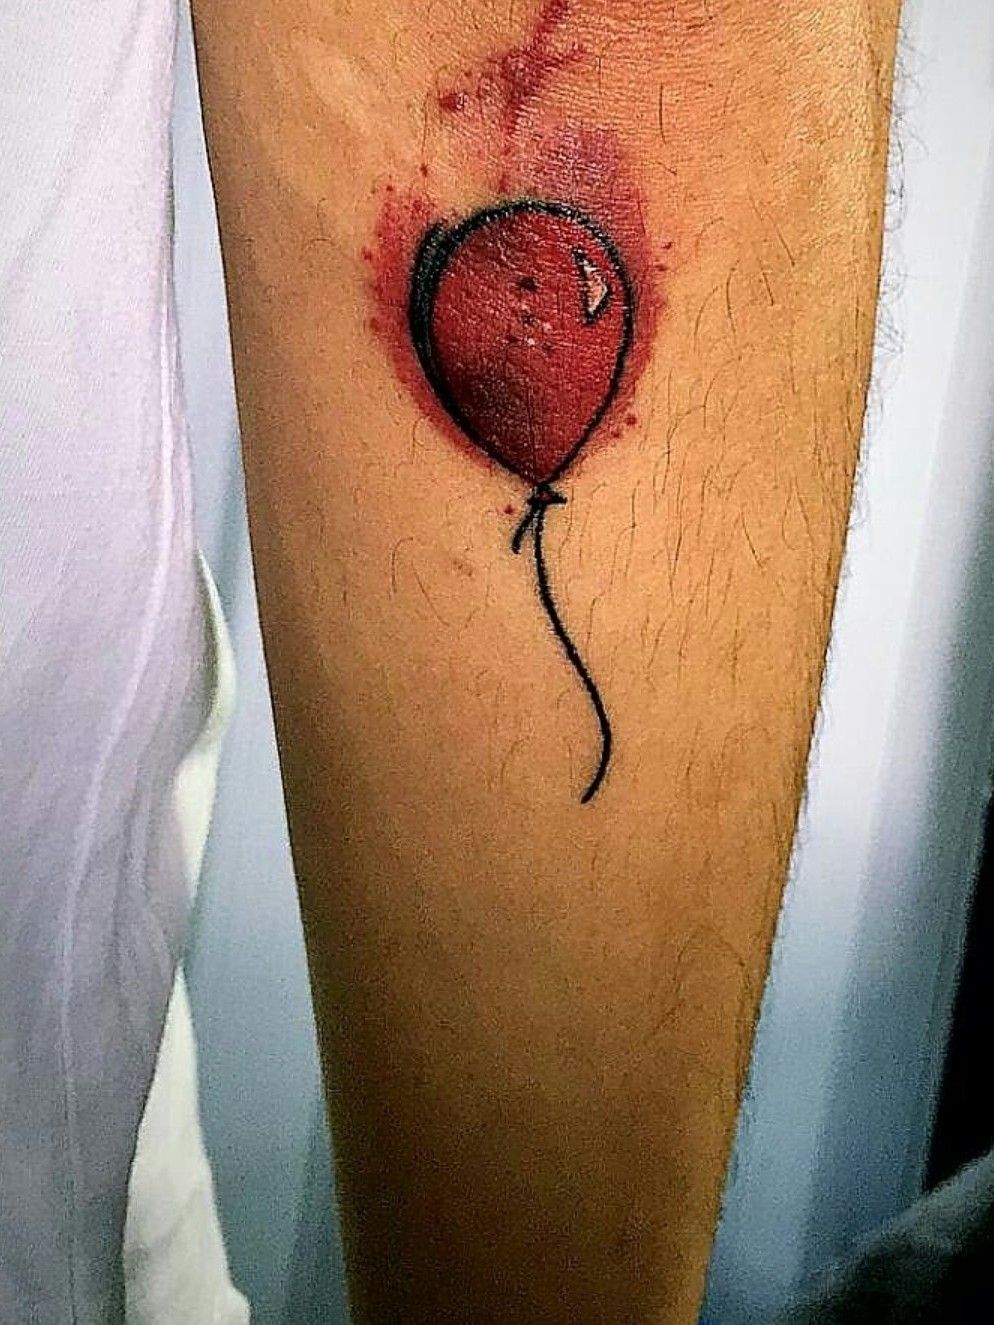 18 Amazing Balloon Tattoo Ideas  Styleoholic